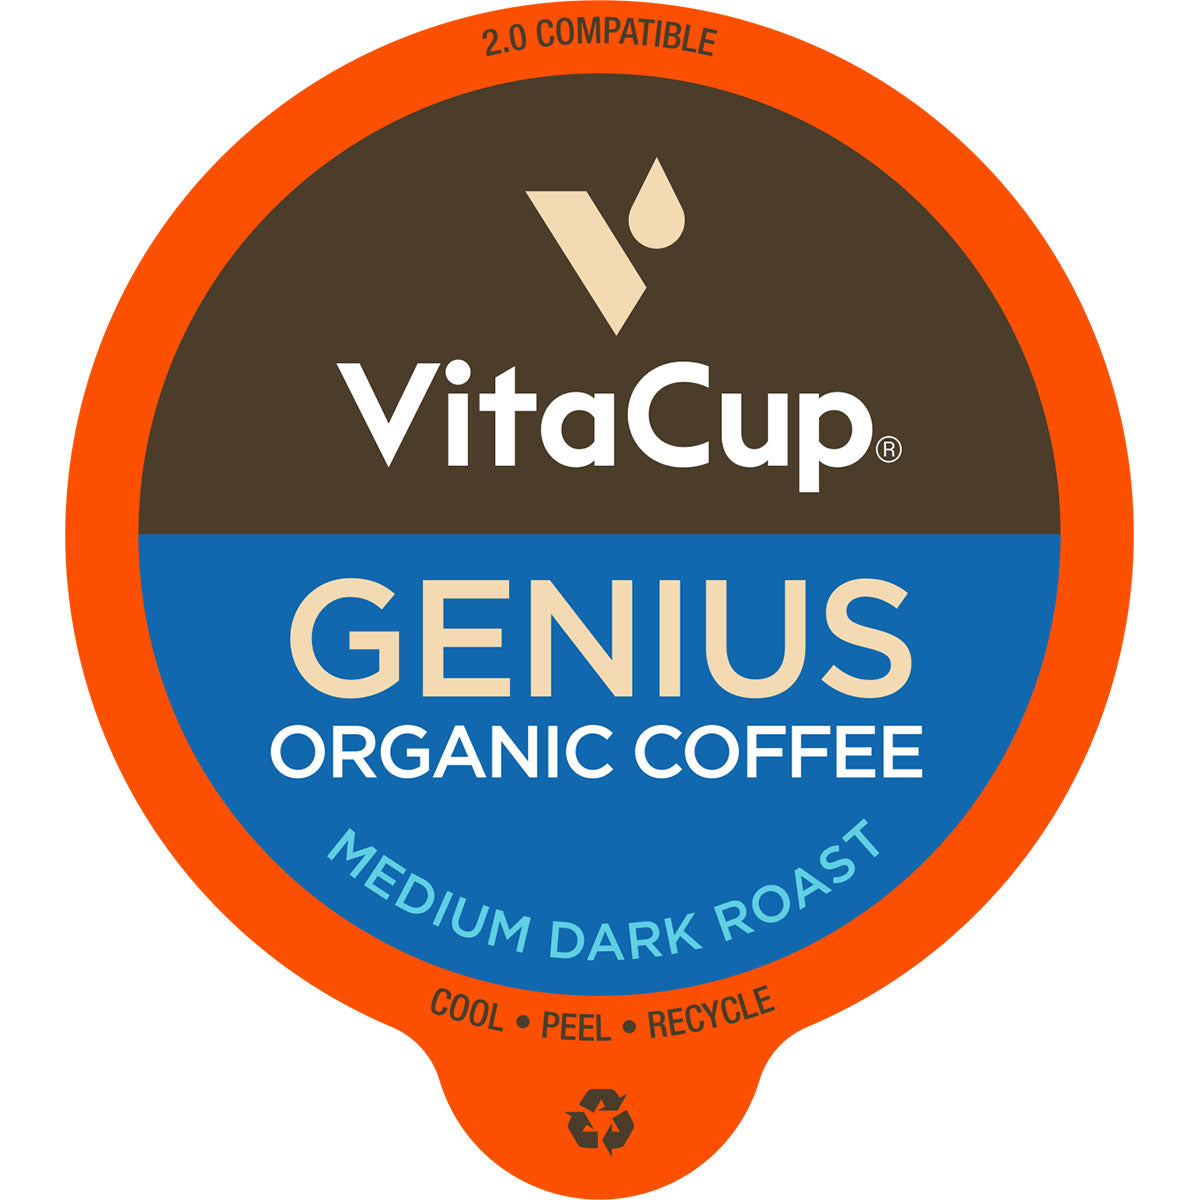 VitaCup Genius Gold Label Organic Coffee Pods